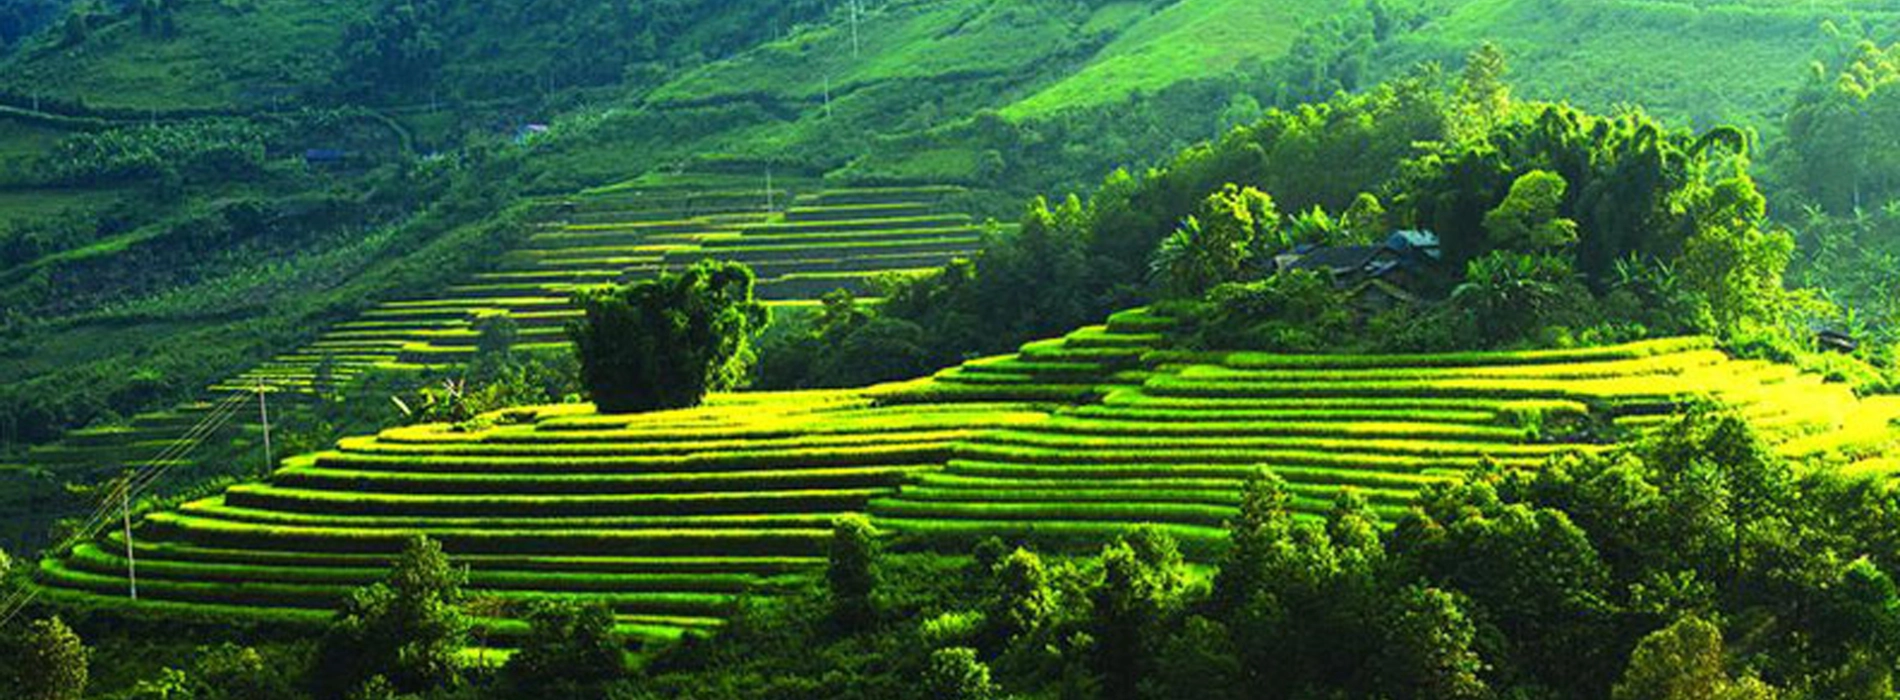 TOP 10 Best Places for Trekking in Vietnam